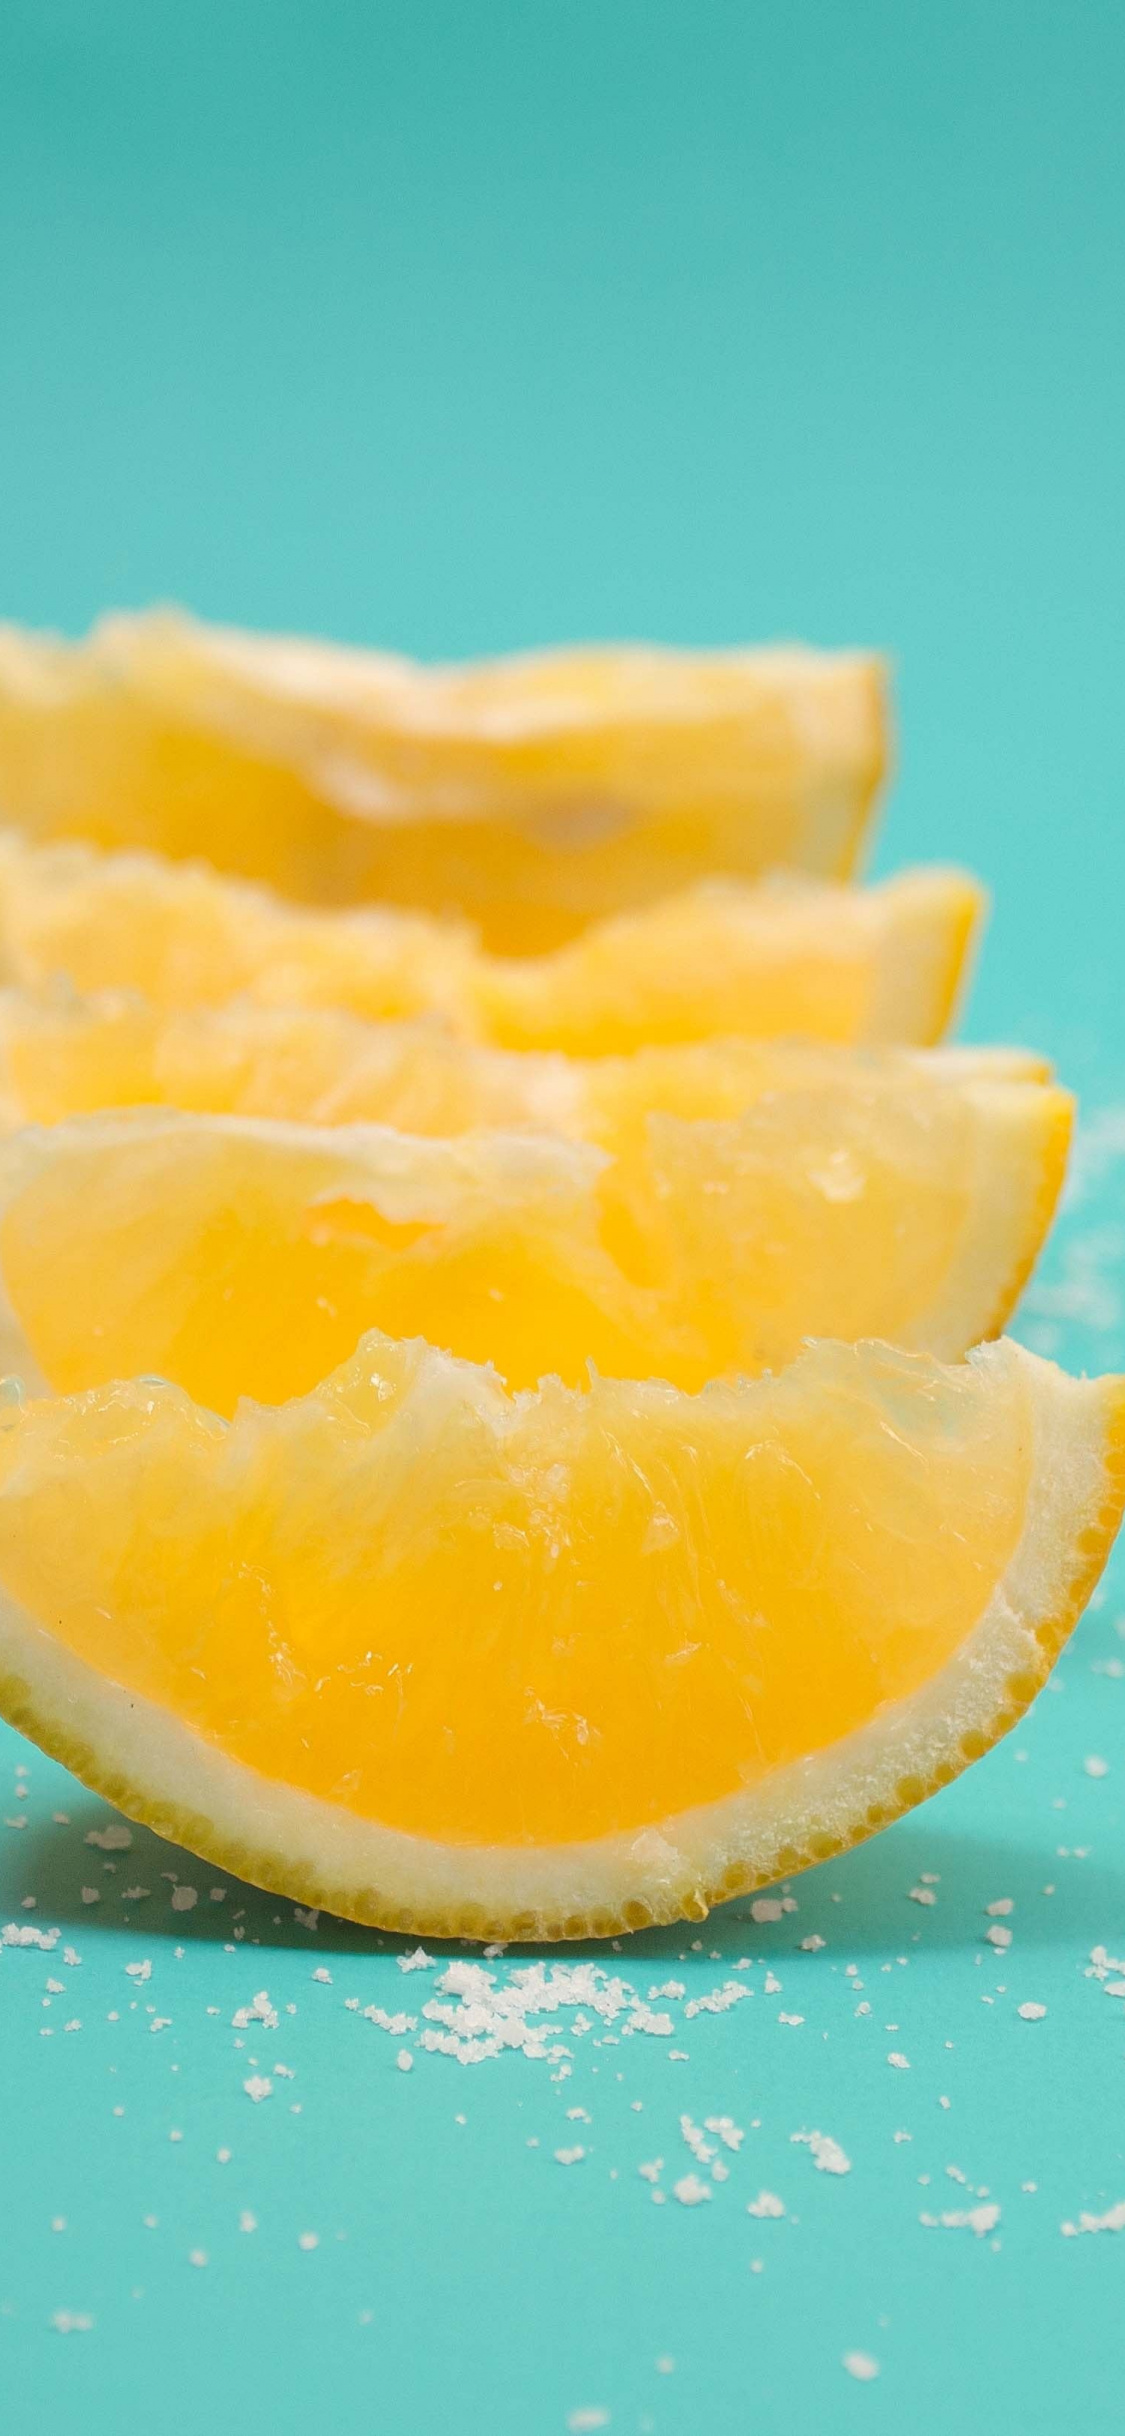 Lemon, Fruits, Slices, Wallpaper - Lemon Fruit , HD Wallpaper & Backgrounds